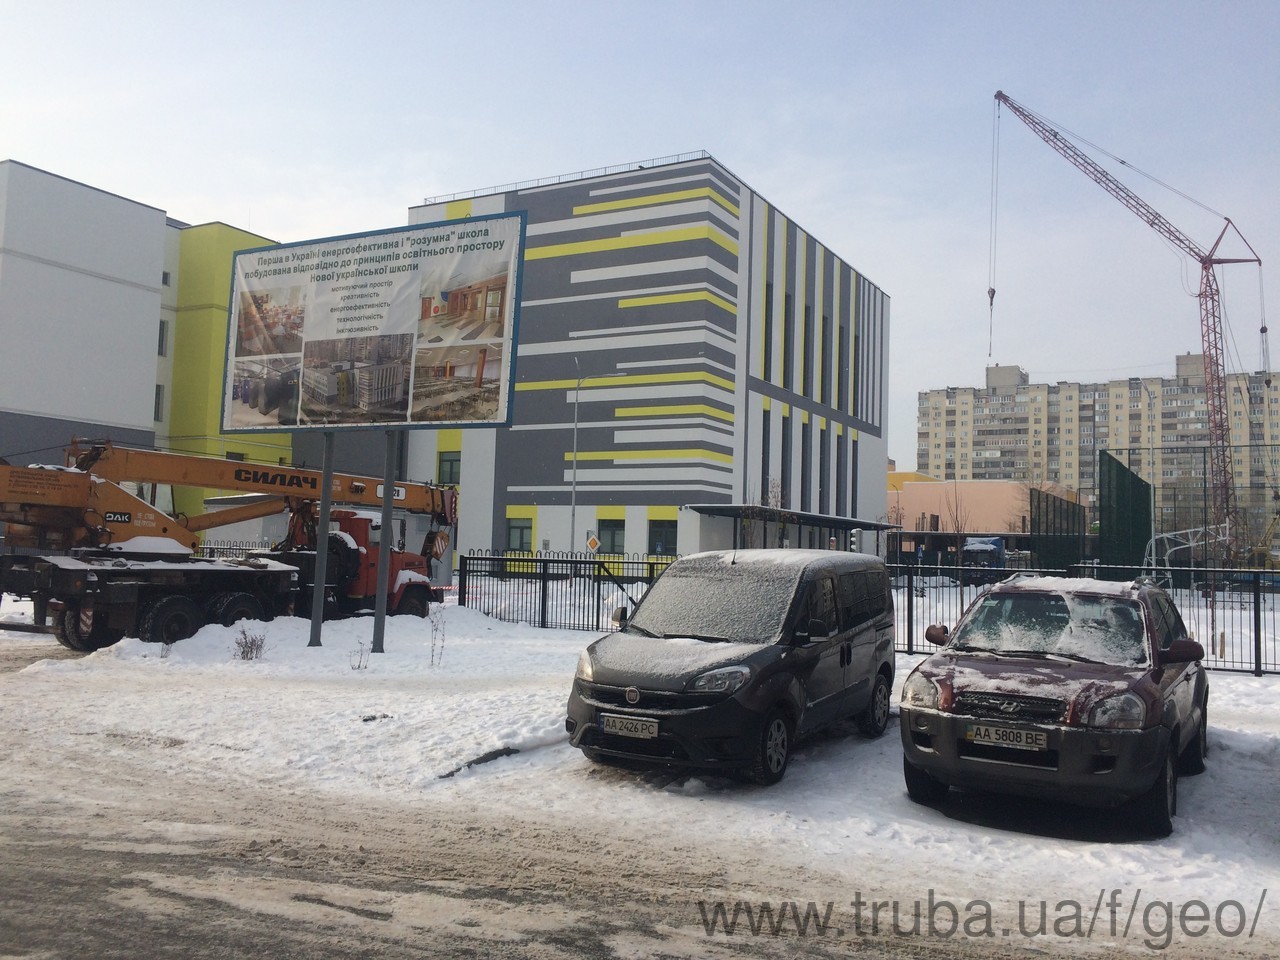 Організована перша енергозберігаюча школа Києва